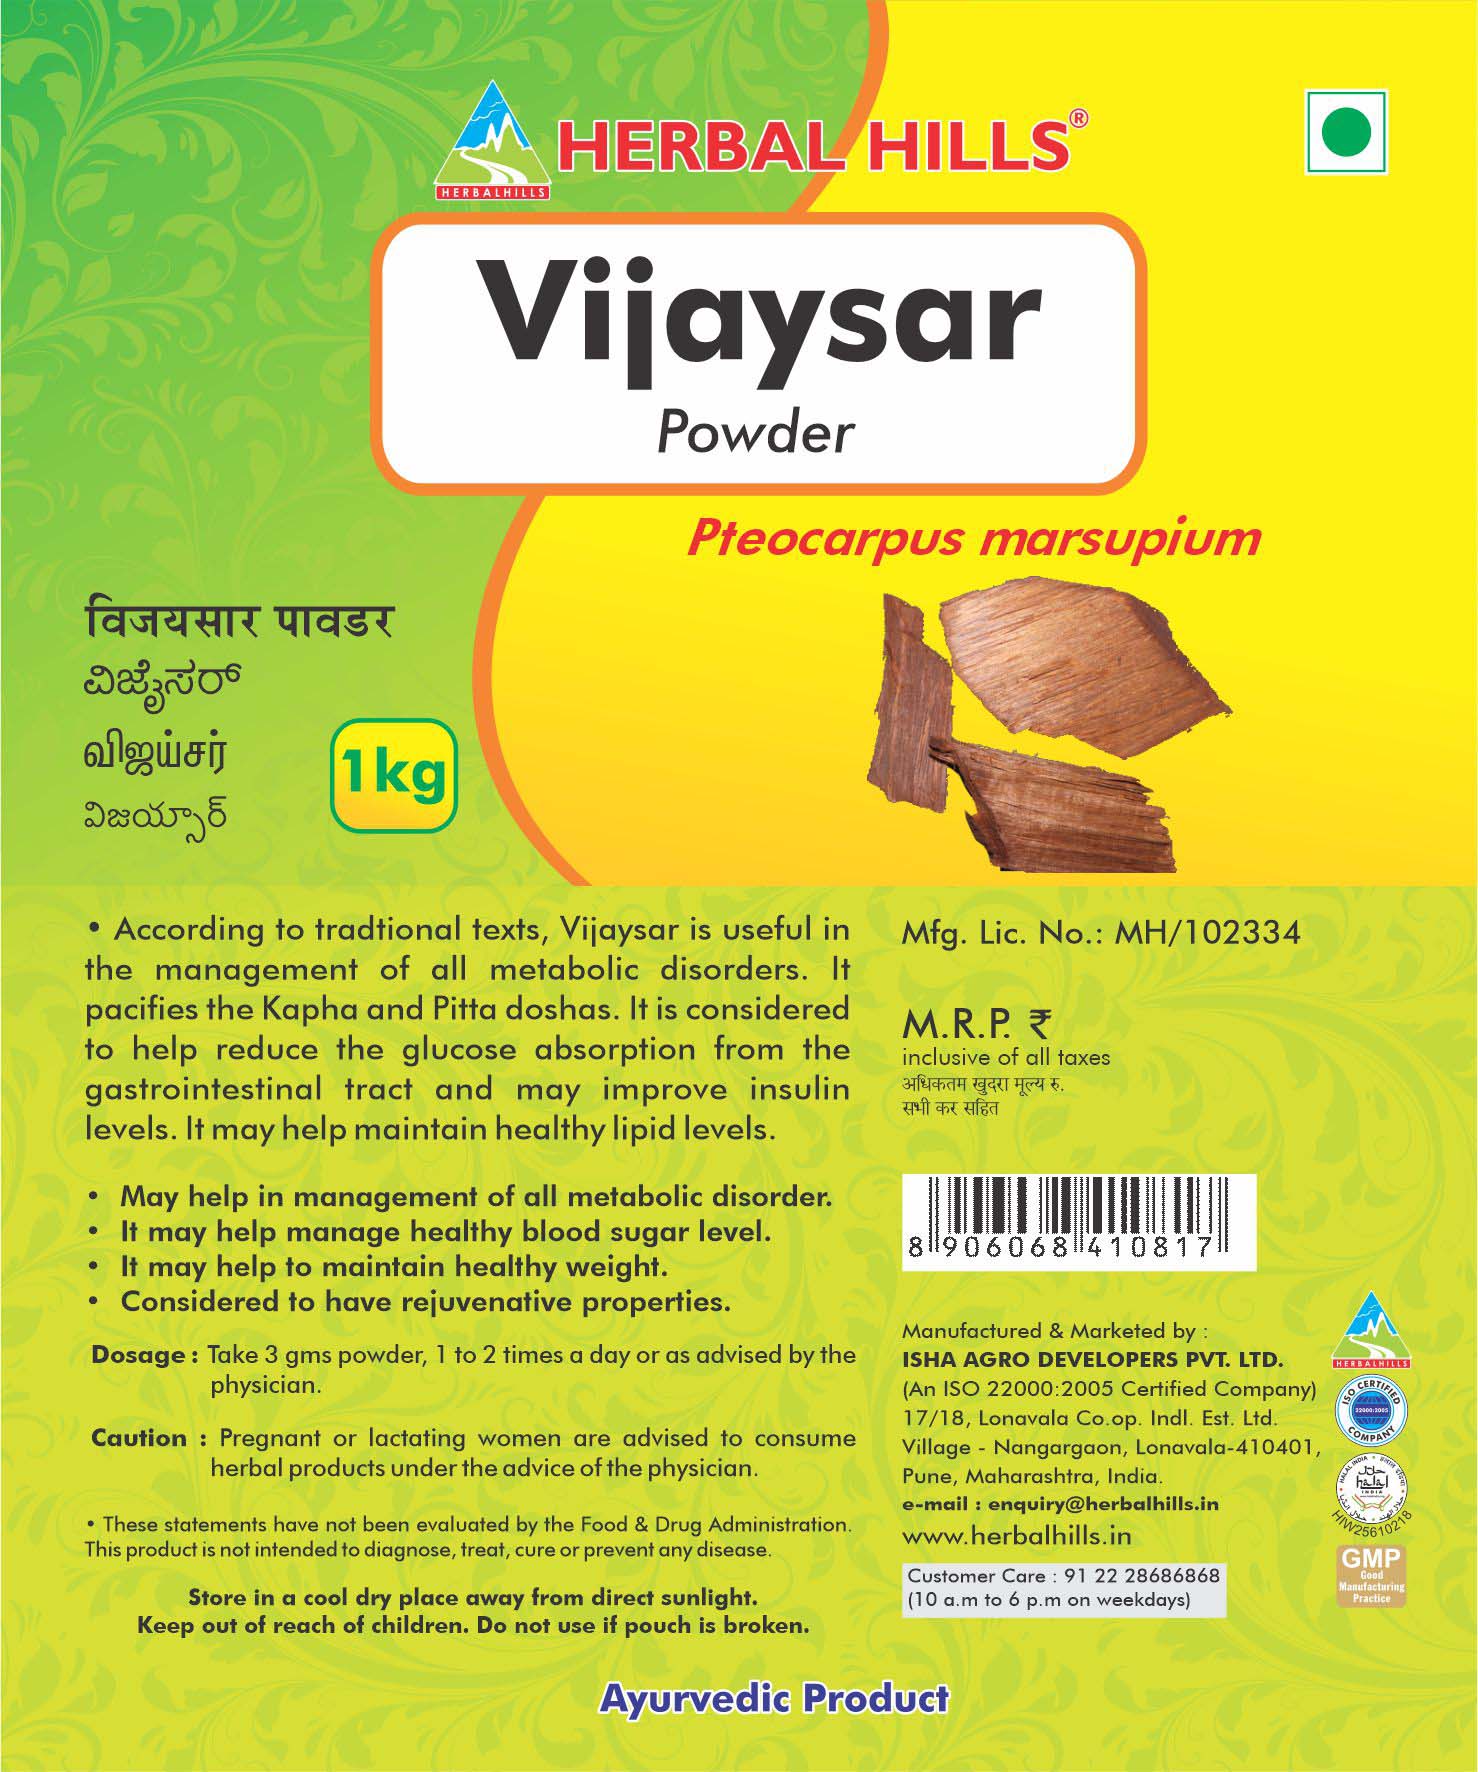 Herbal Hills Vijaysar powder